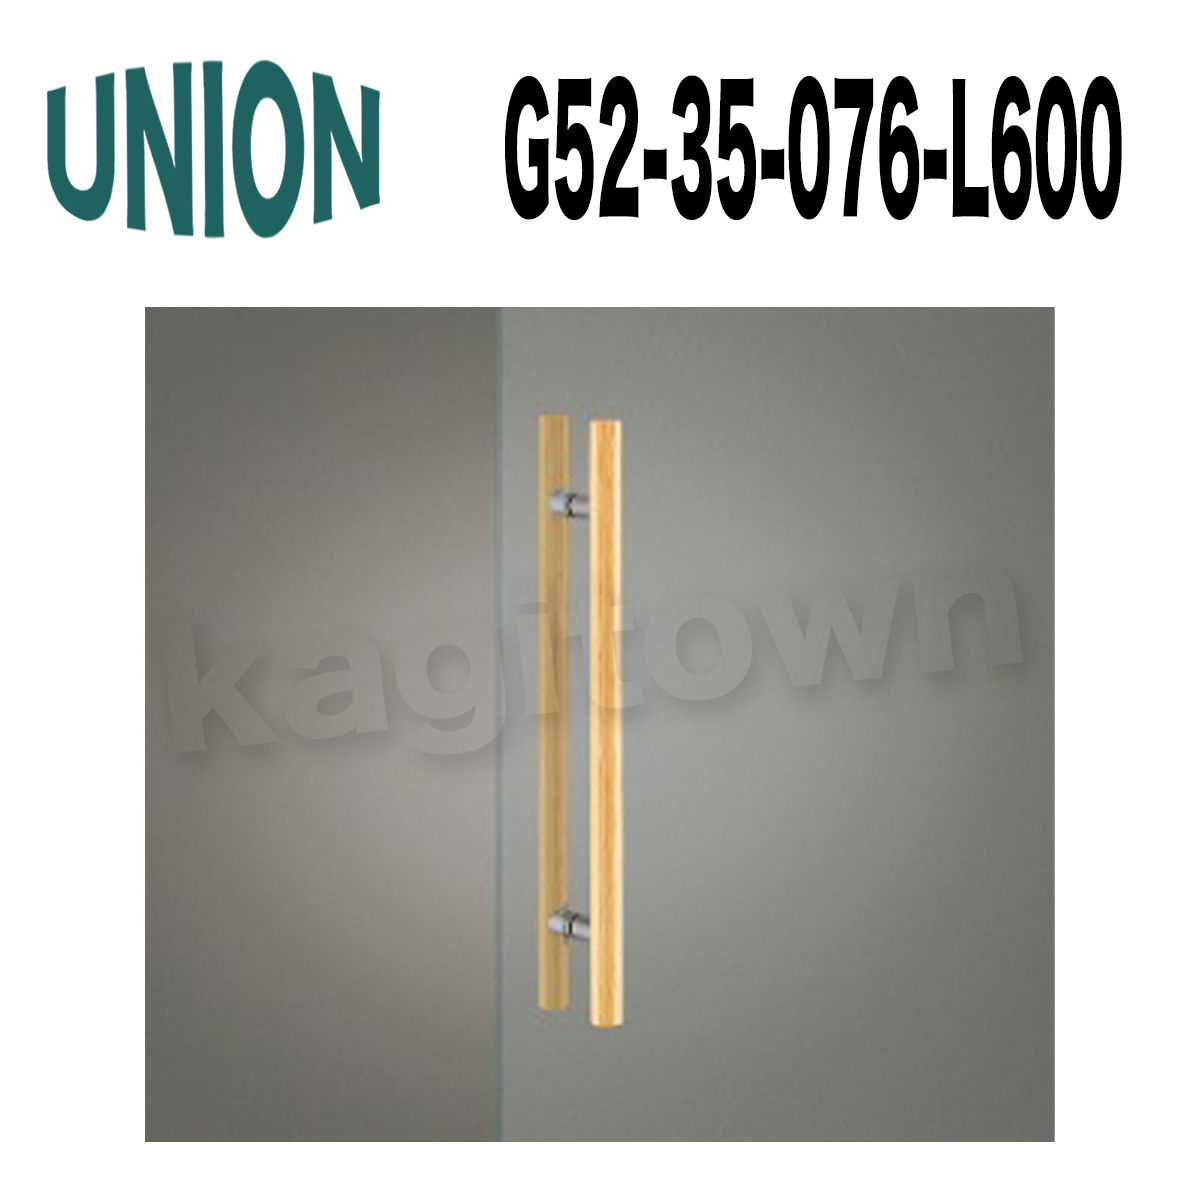 UNION【ユニオン】G52-35-076-L600[ドアハンドル] 押し棒（内外）